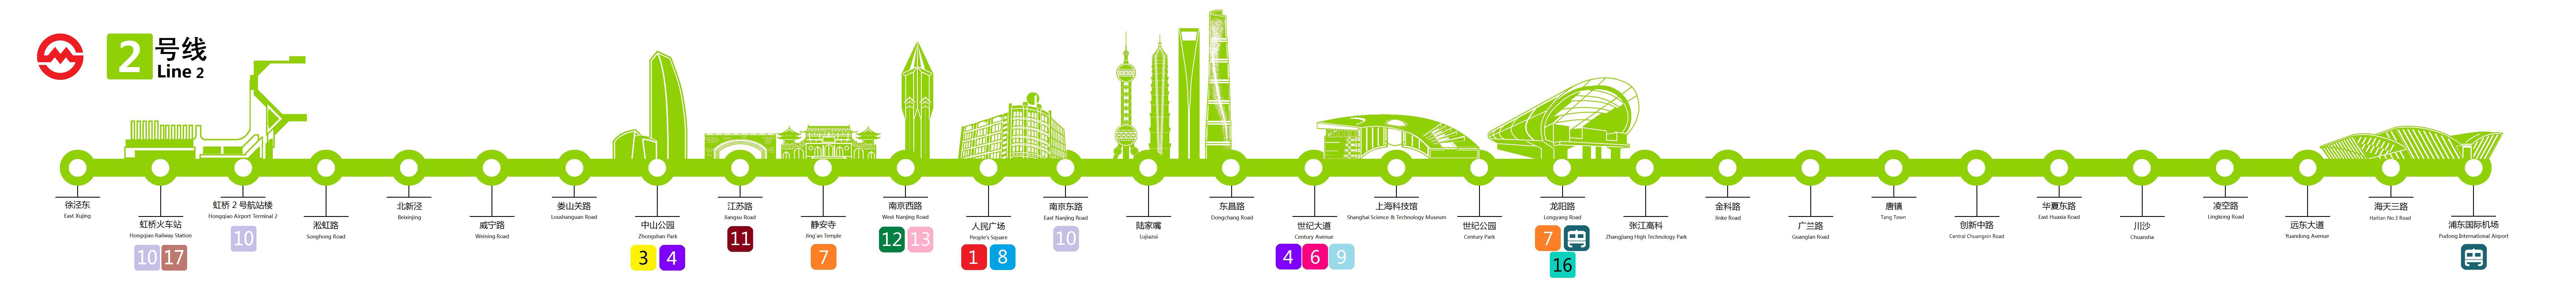 上海捷運2號線線路示意圖